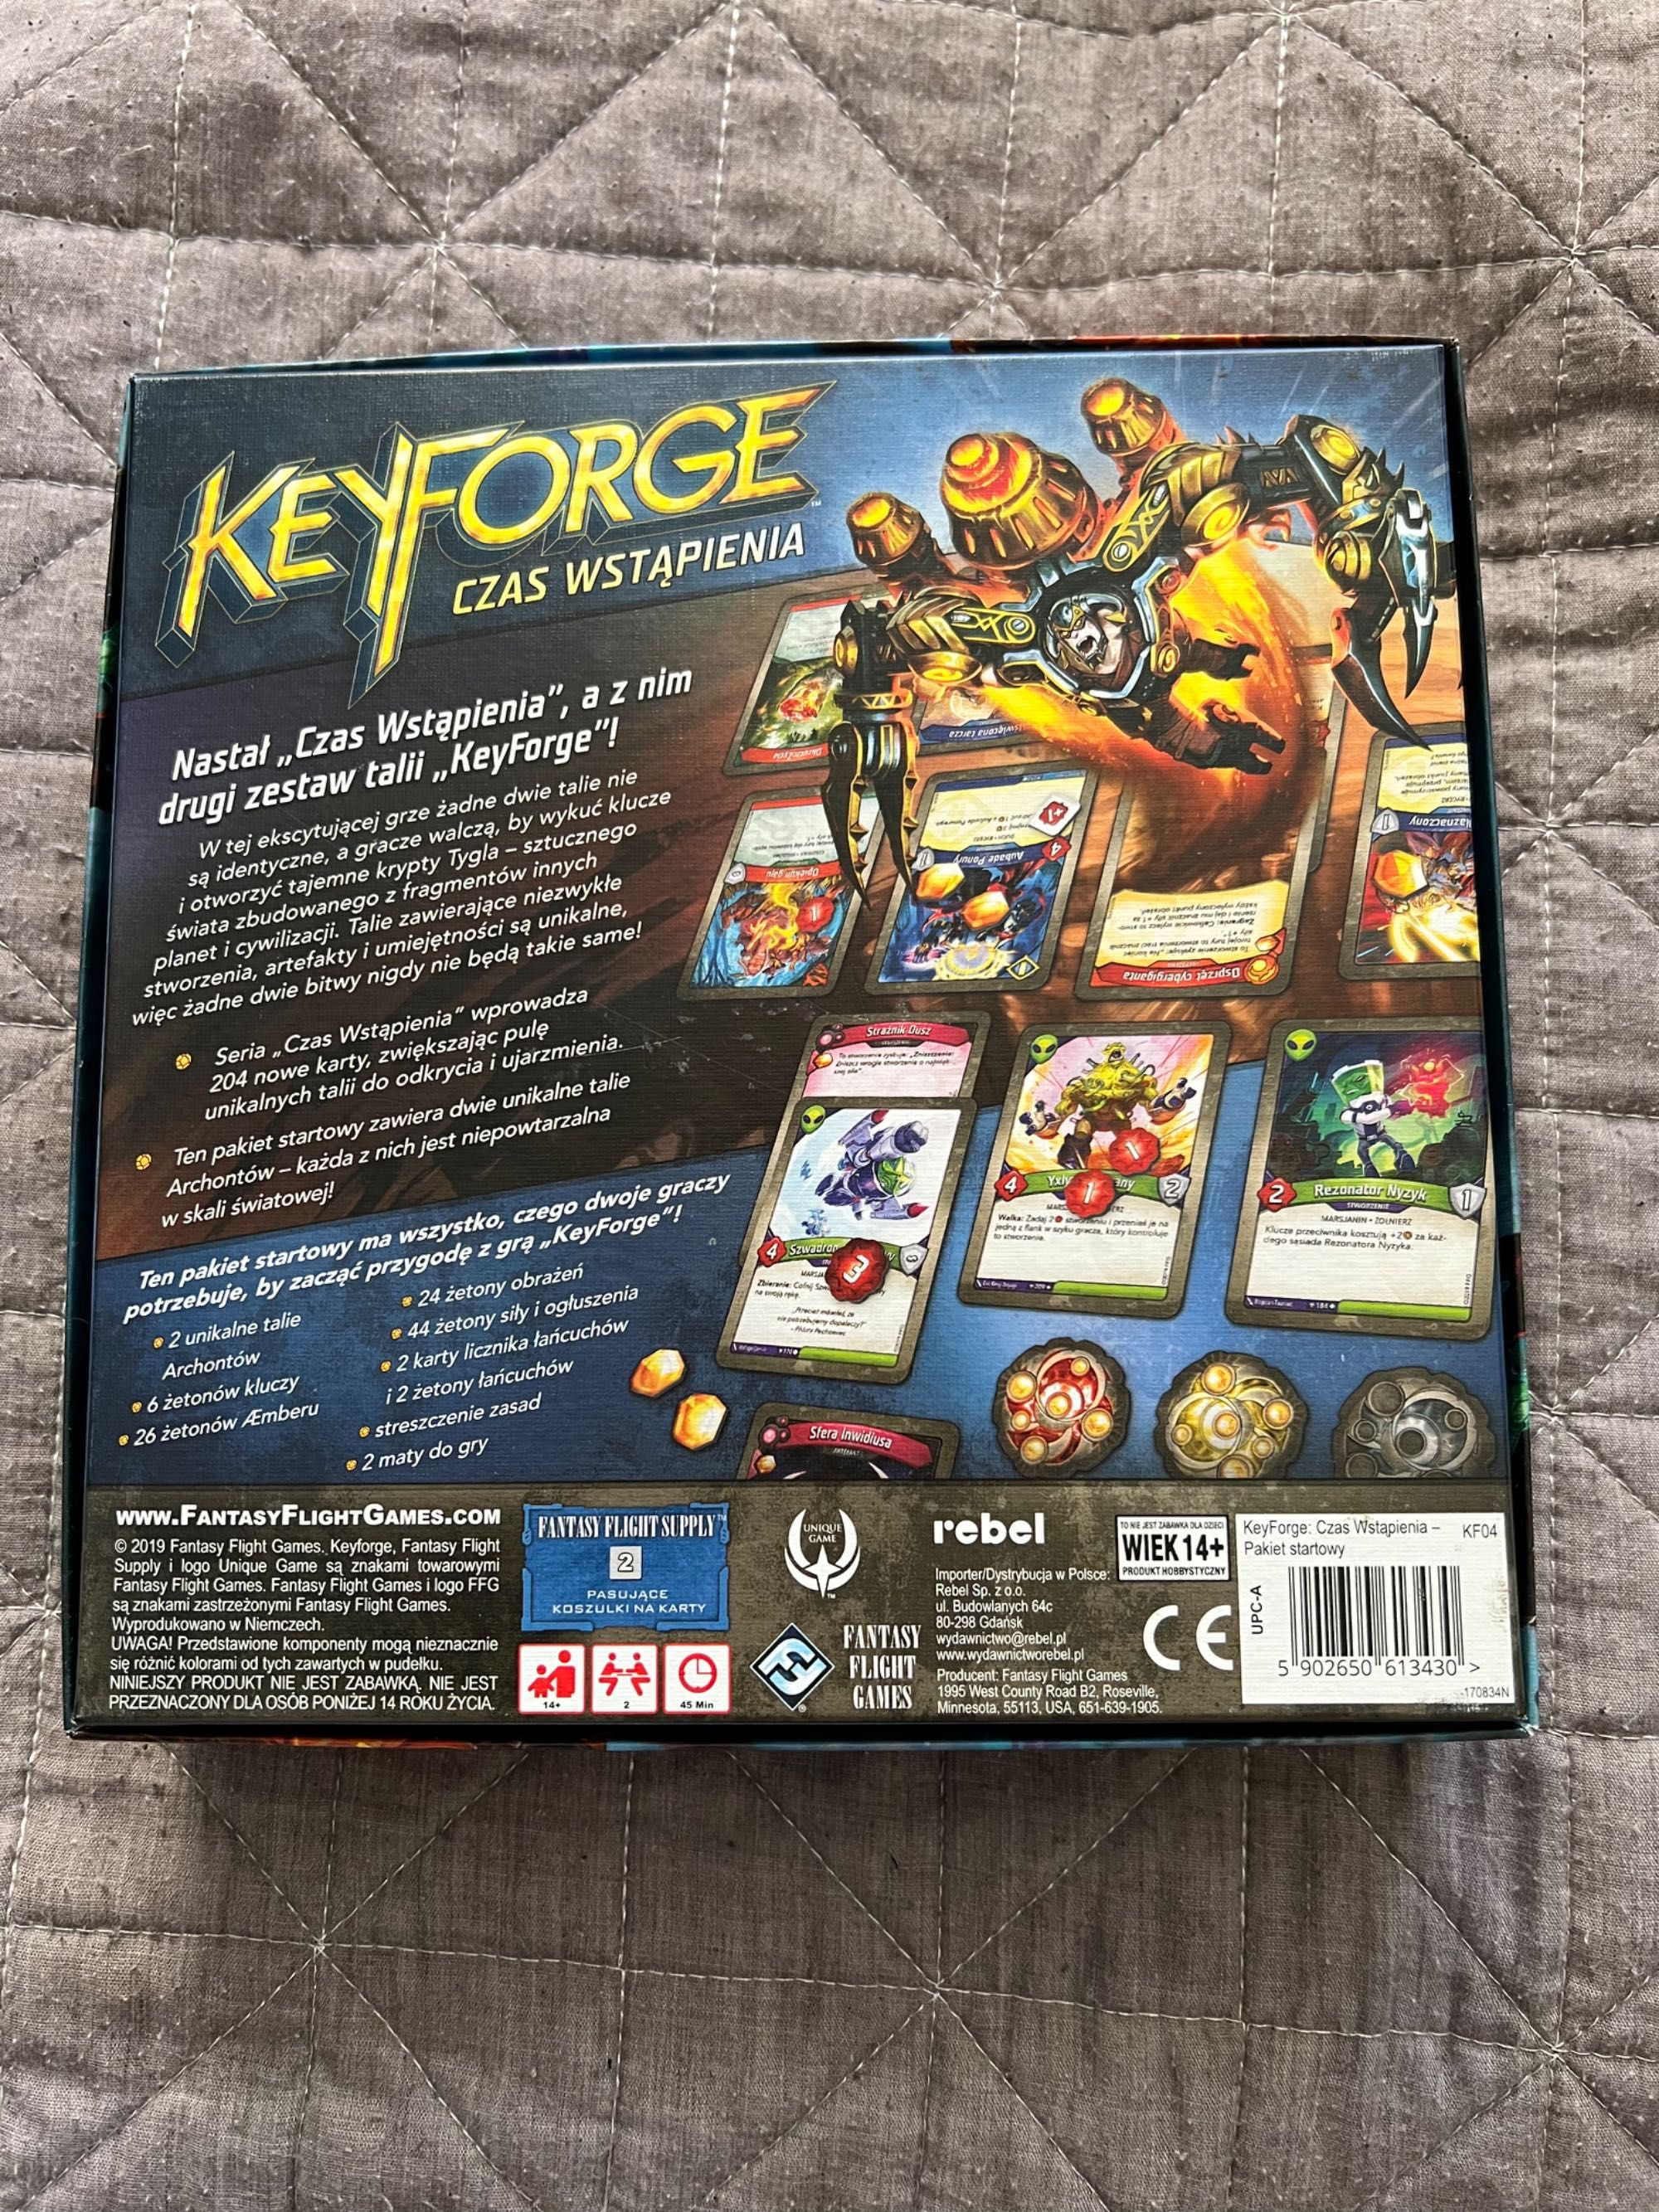 Pakiet startowy keyforge + 9 talii do gry